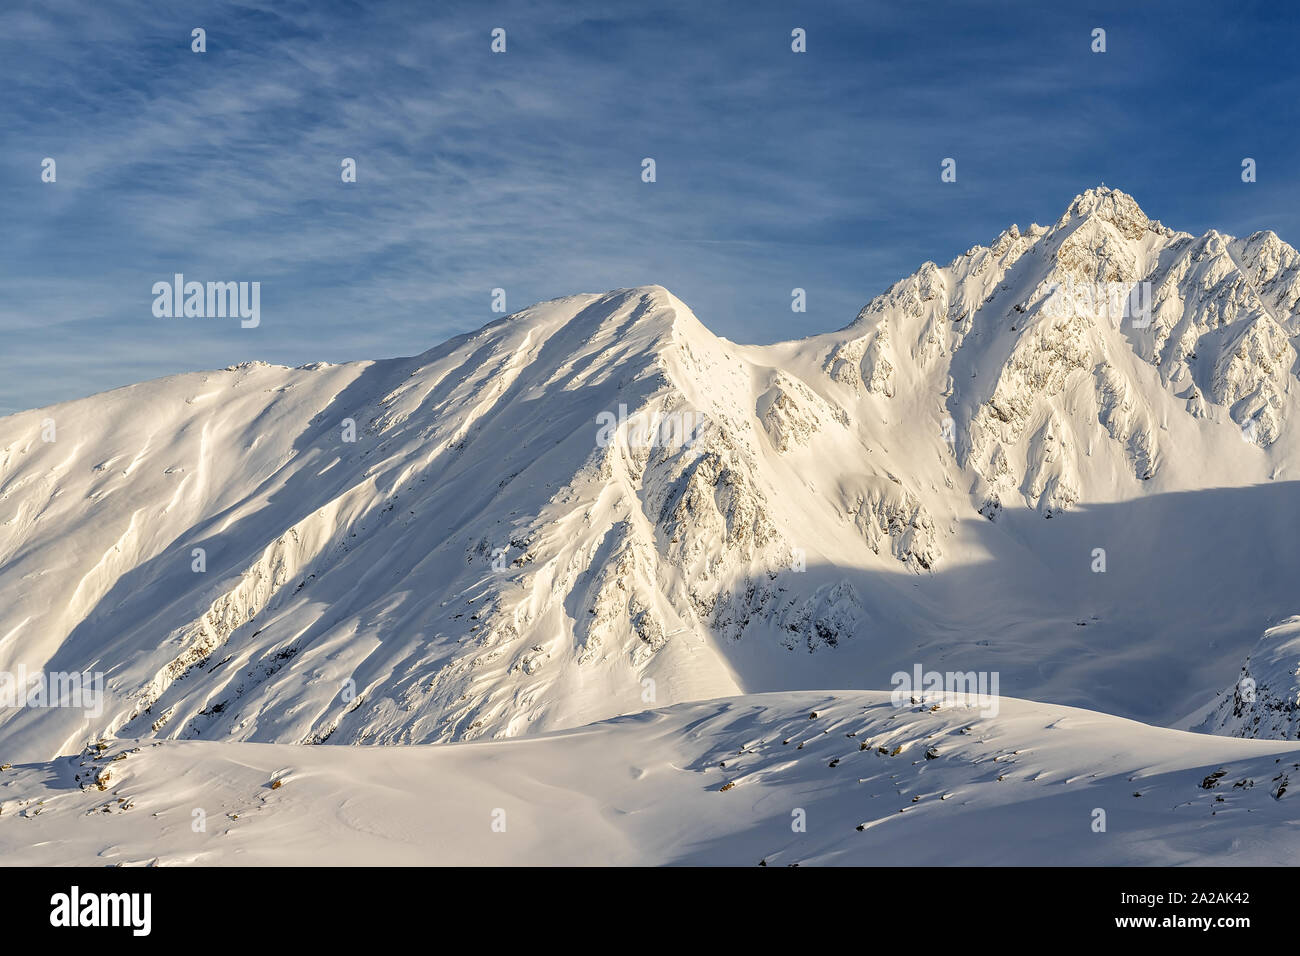 Pintorescos Alpes austriacos picos montañosos cubiertos de capa de nieve en invierno a tiempo cálido atardecer o al amanecer. Azul claro sy en segundo plano. Rocosa natural Foto de stock